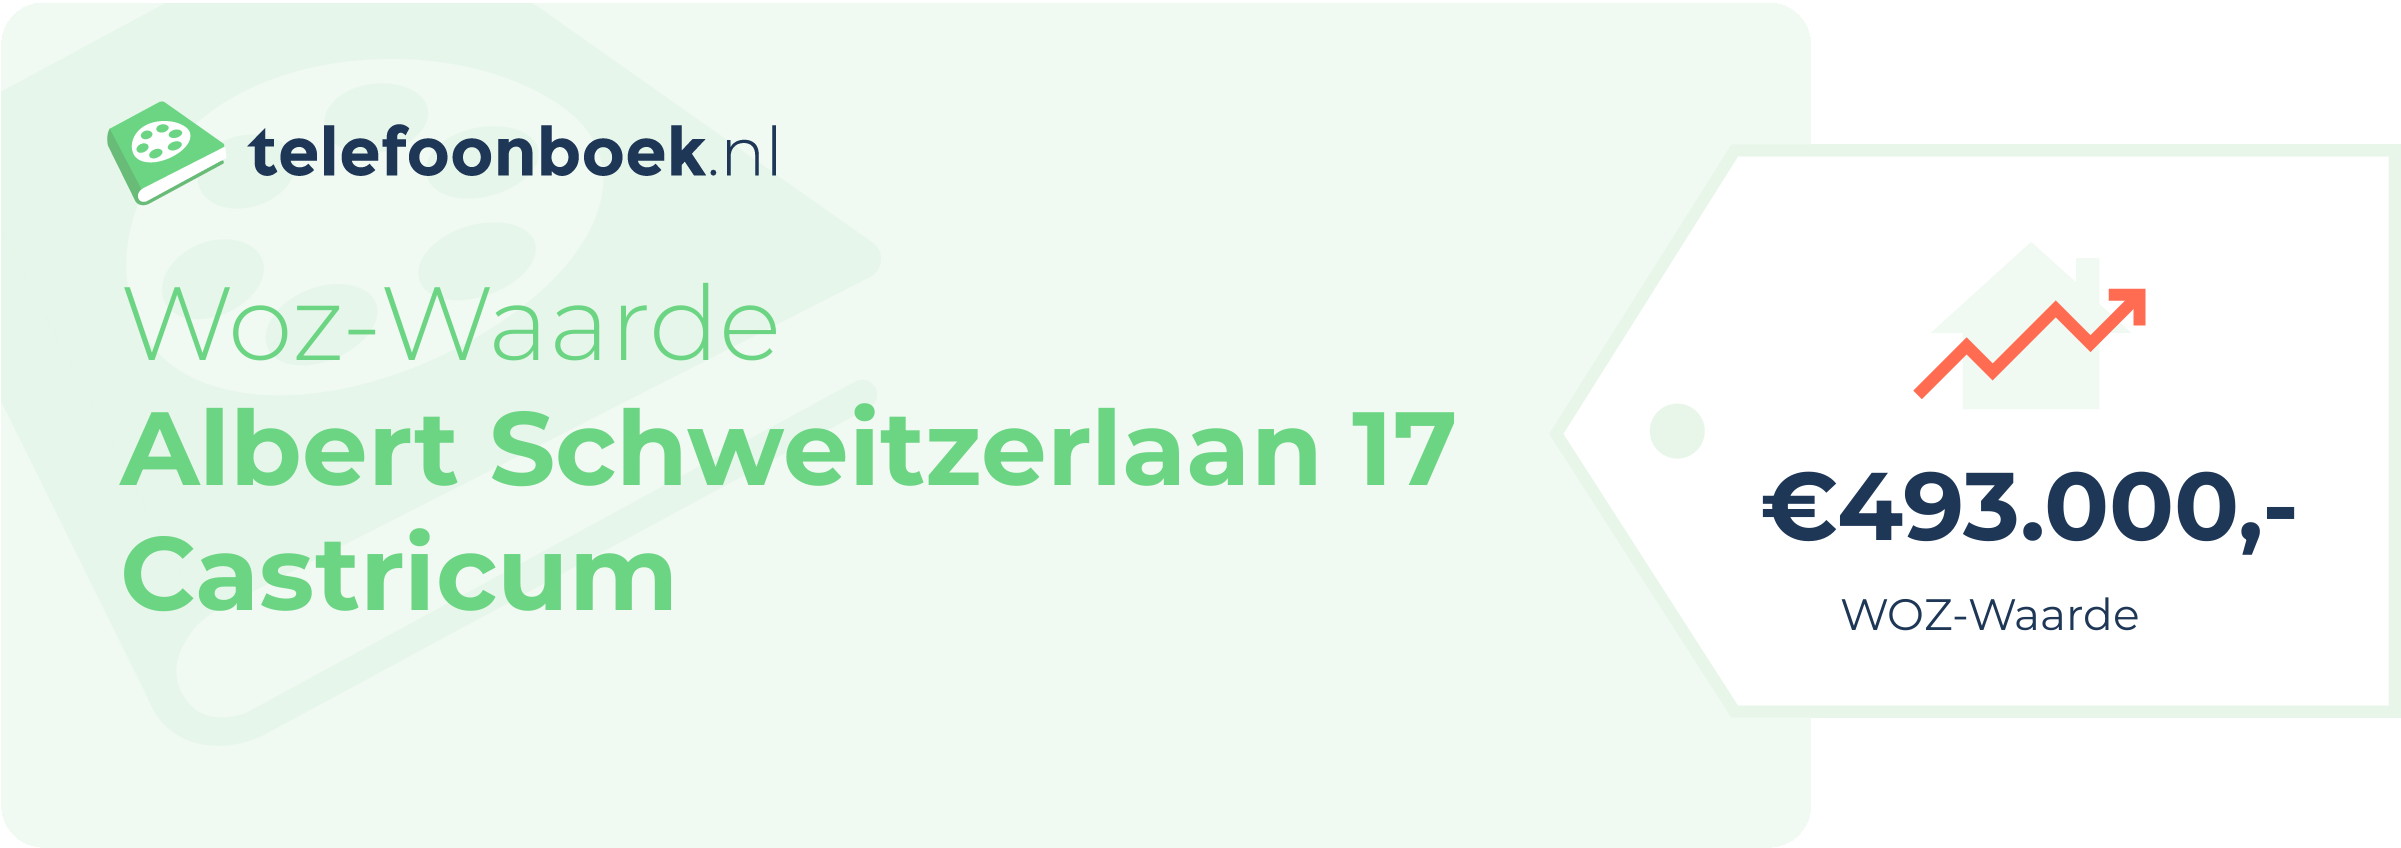 WOZ-waarde Albert Schweitzerlaan 17 Castricum